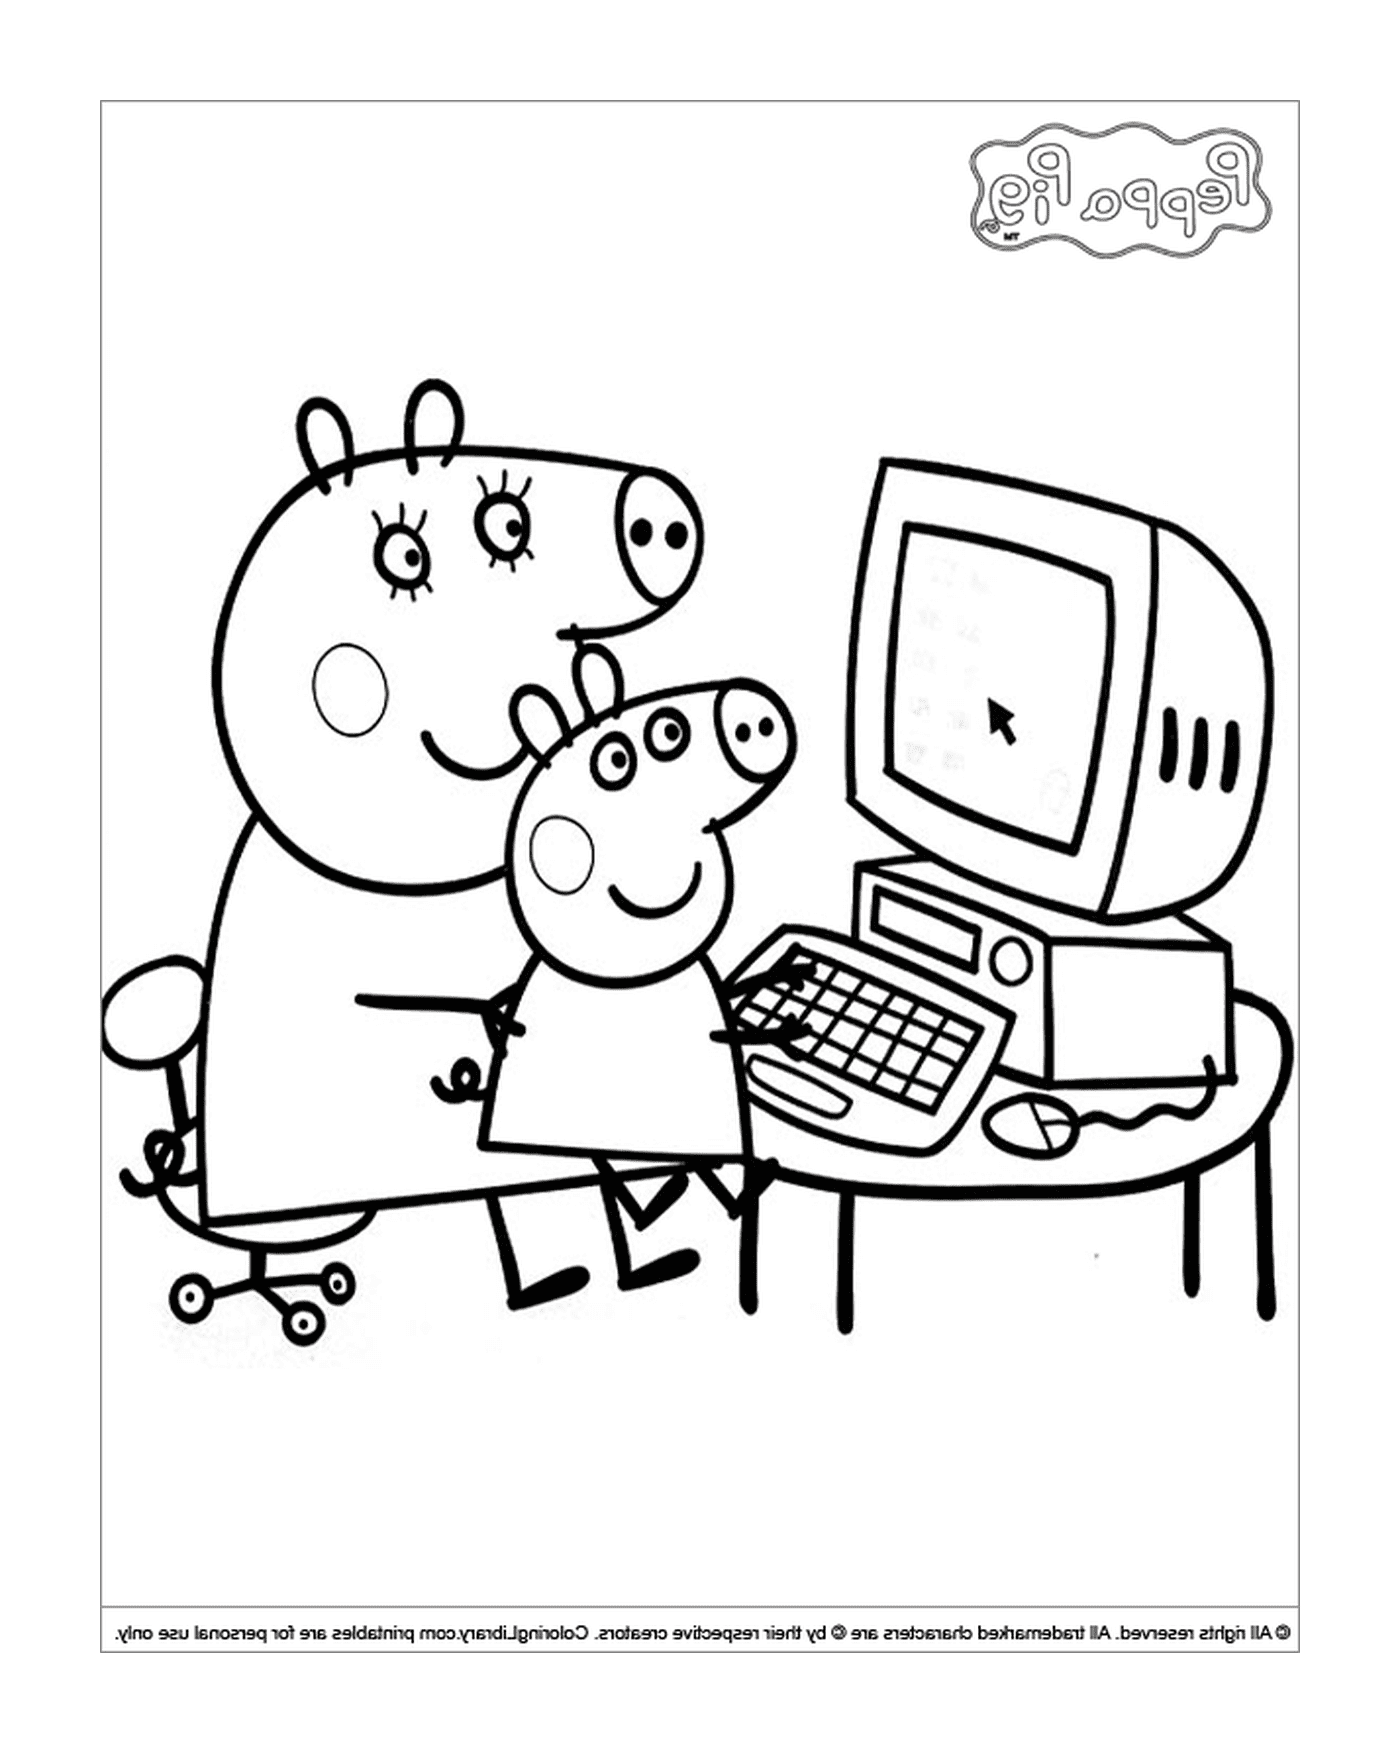  पेप्पो सूअर और उनके पिता कंप्यूटर पर 